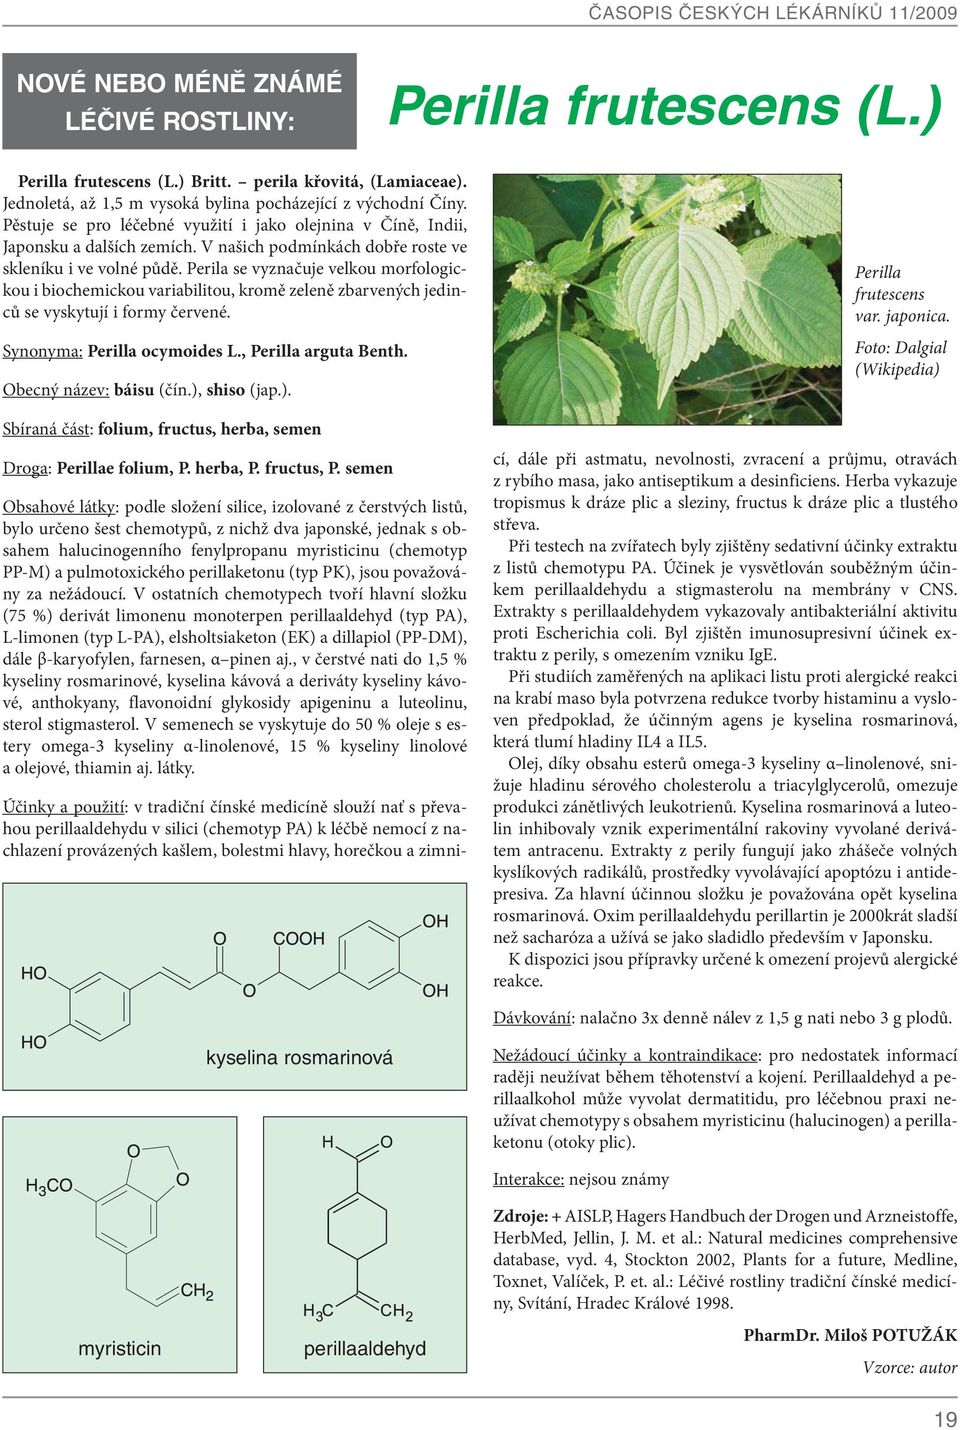 Perila se vyznačuje velkou morfologickou i biochemickou variabilitou, kromě zeleně zbarvených jedinců se vyskytují i formy červené. Synonyma: Perilla ocymoides L., Perilla arguta Benth.